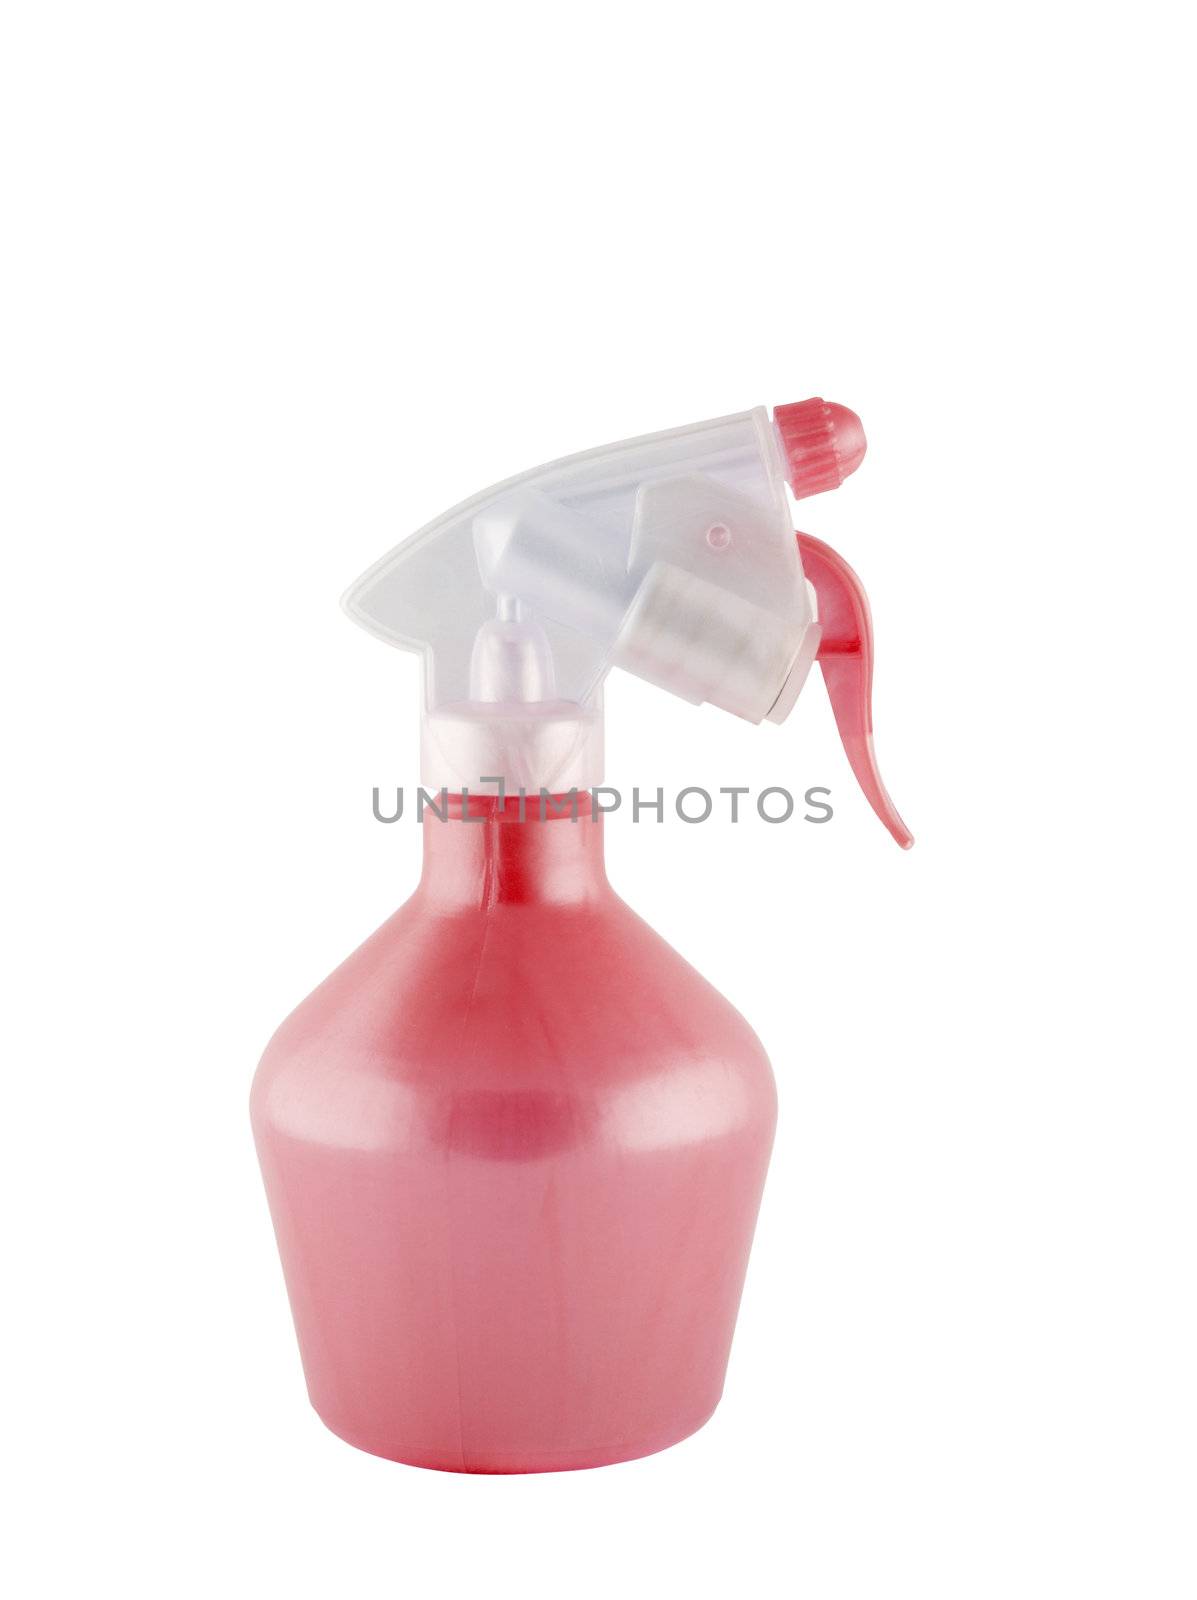 spray atomizer by ozaiachin